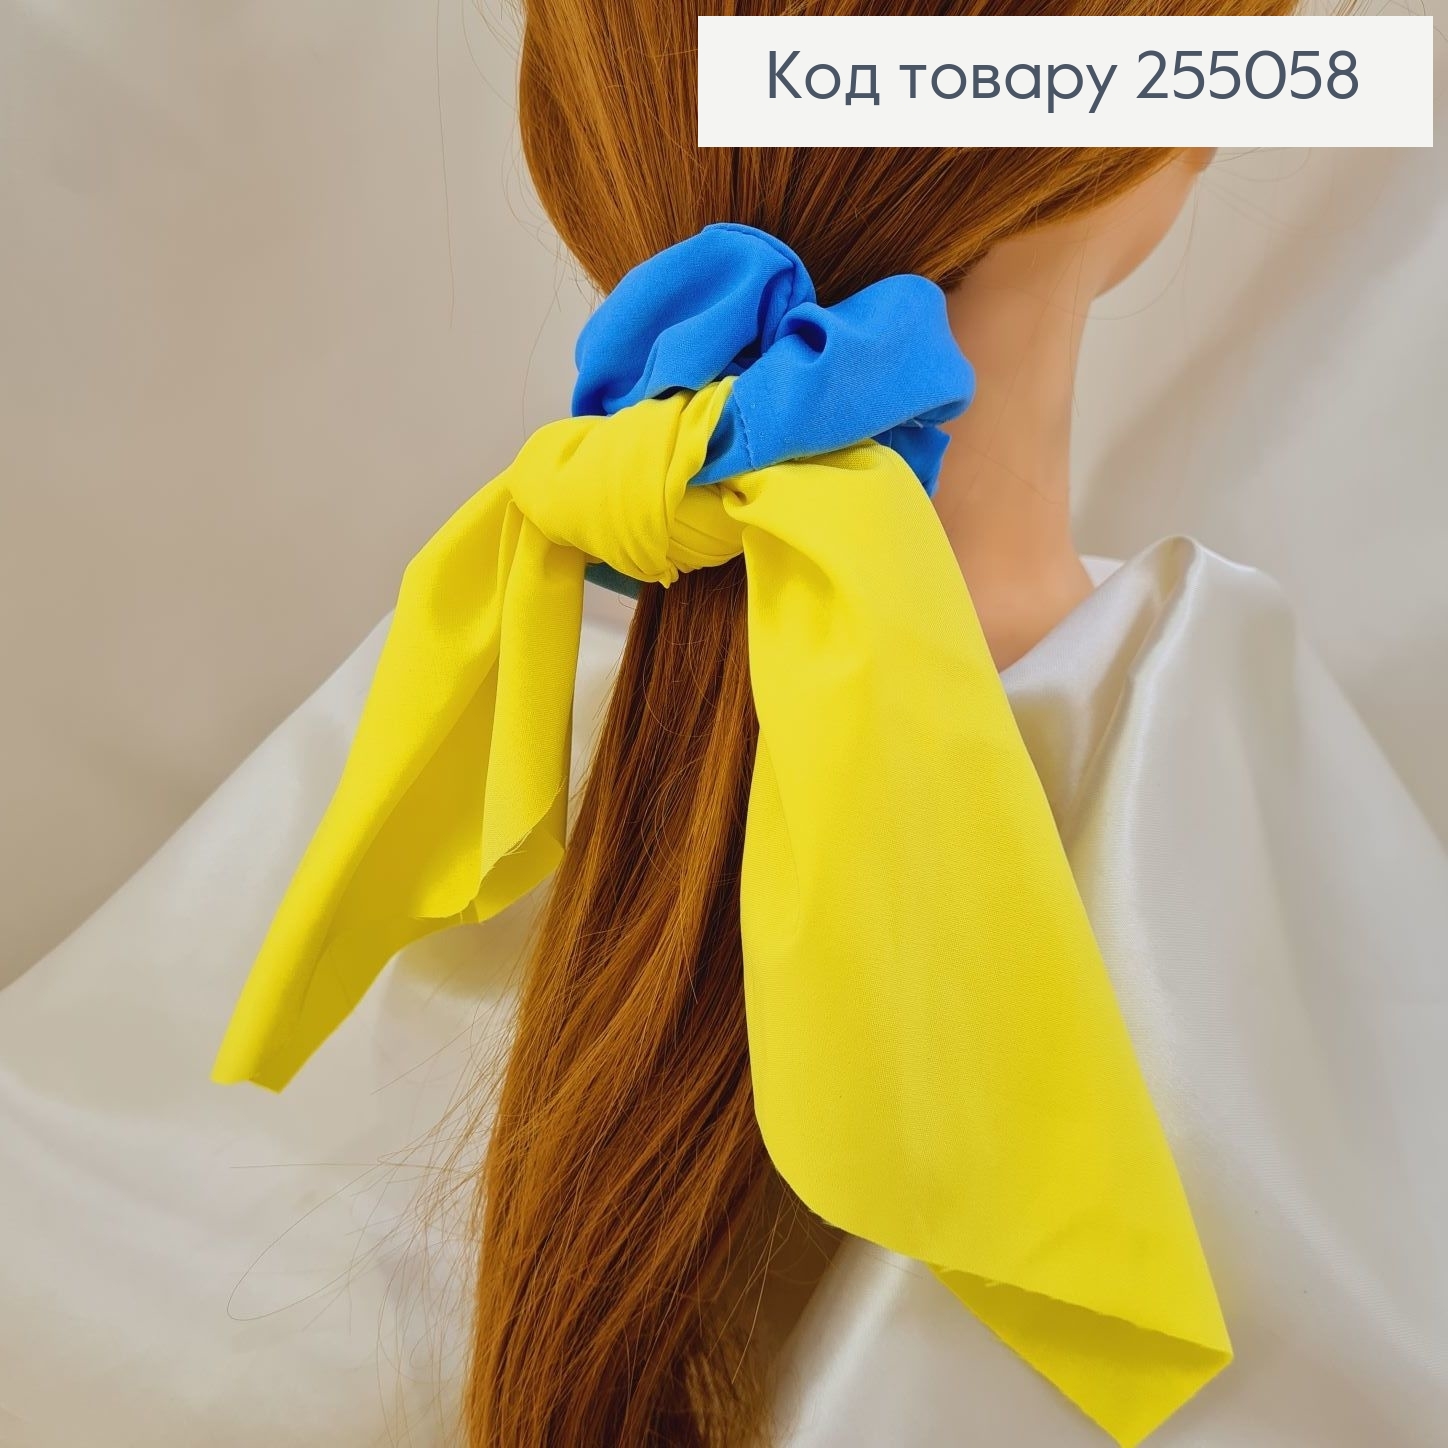 Резинка  Твіллі жовто-блакитна (ручна робота,Україна) 255058 фото 2